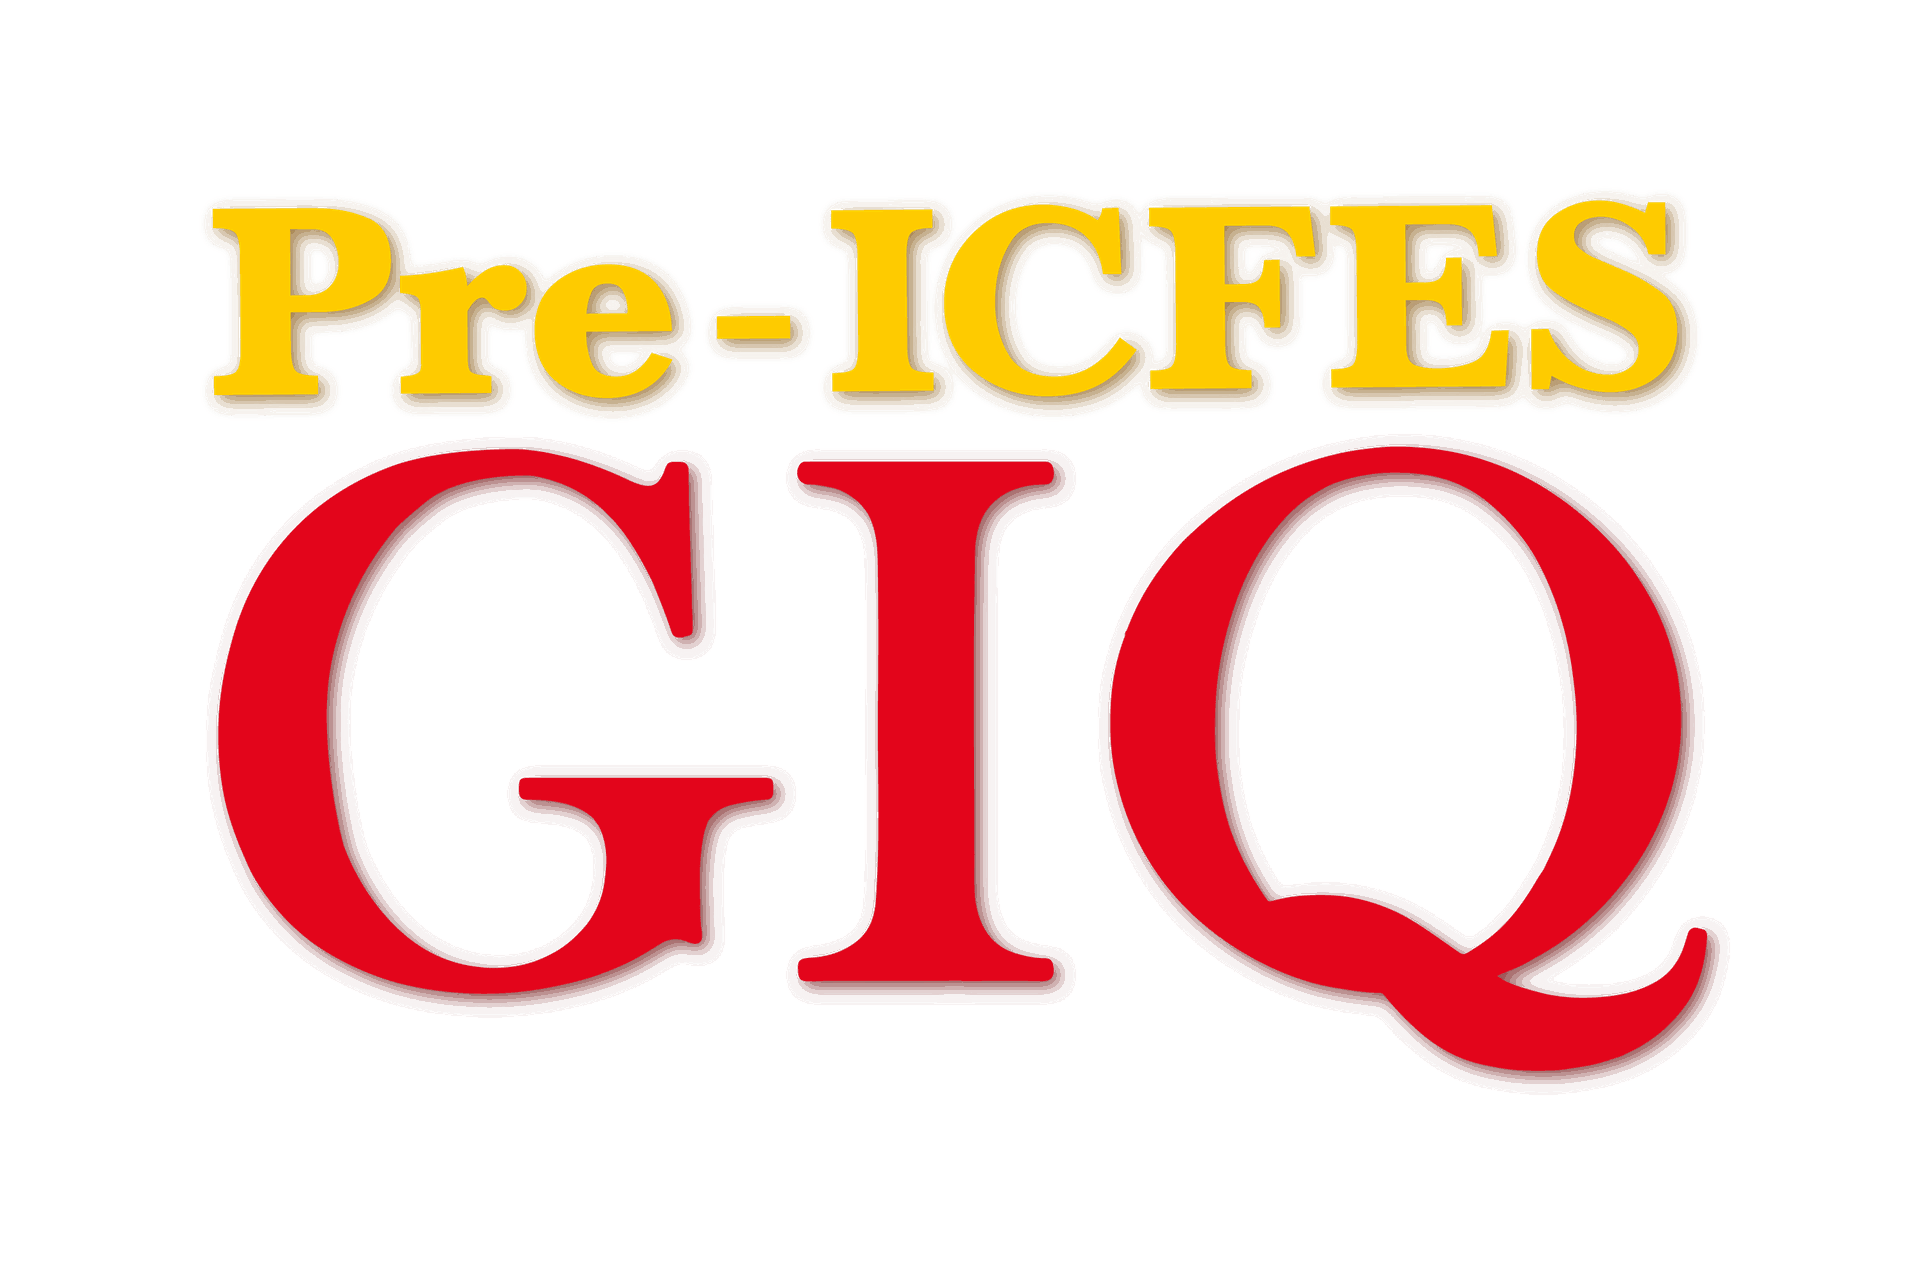 Pre-ICFES GIQ